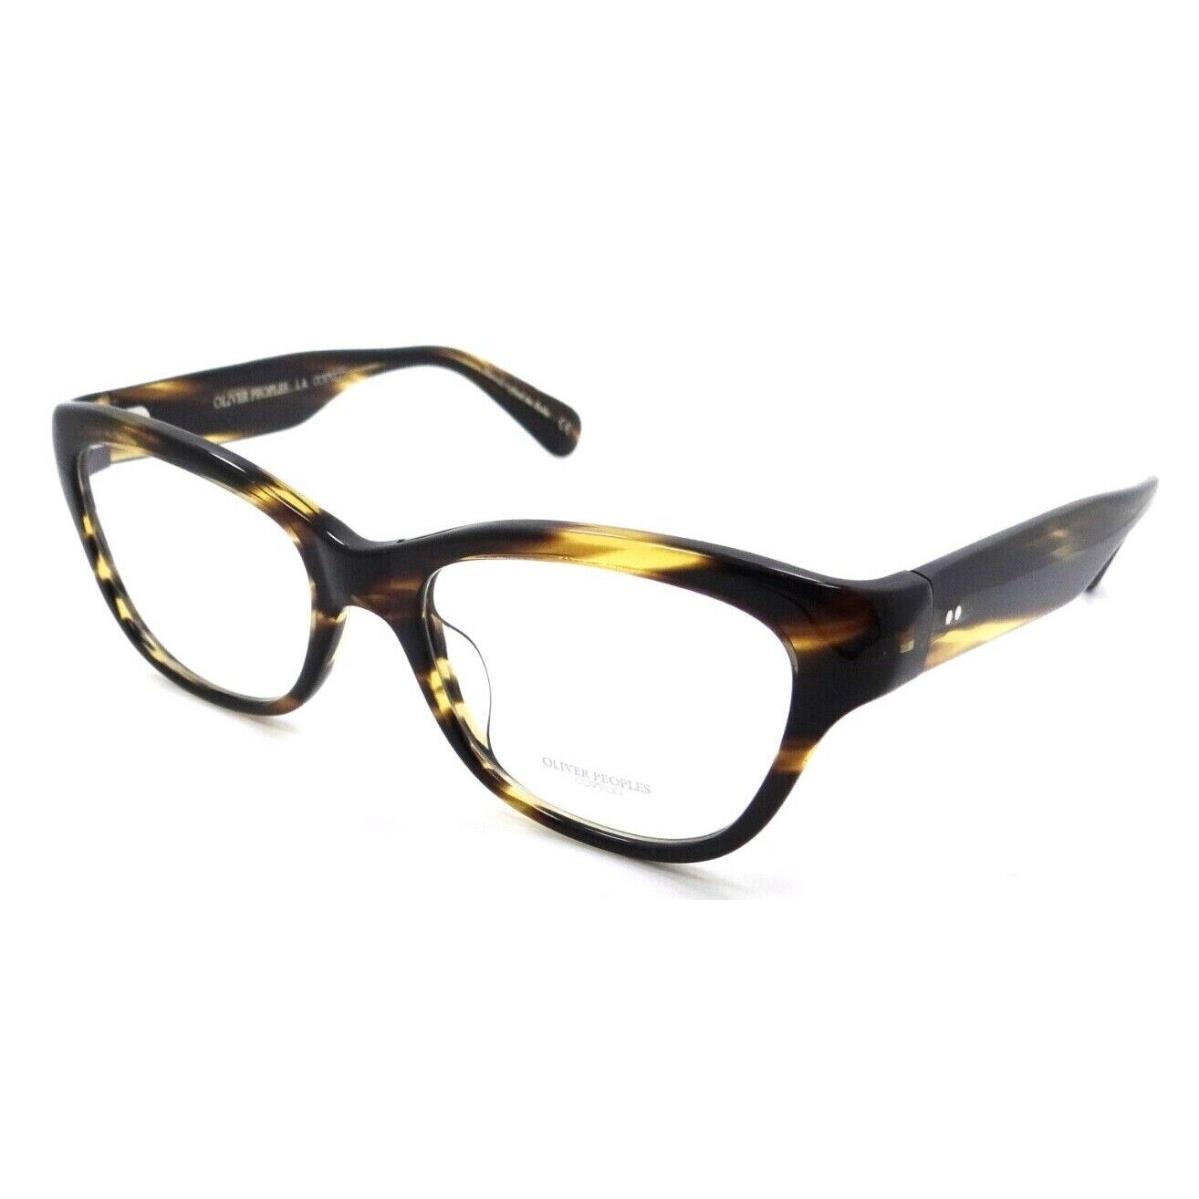 Oliver Peoples Eyeglasses Frames OV 5431U 1003 52-18-135 Siddie Cocobolo Italy